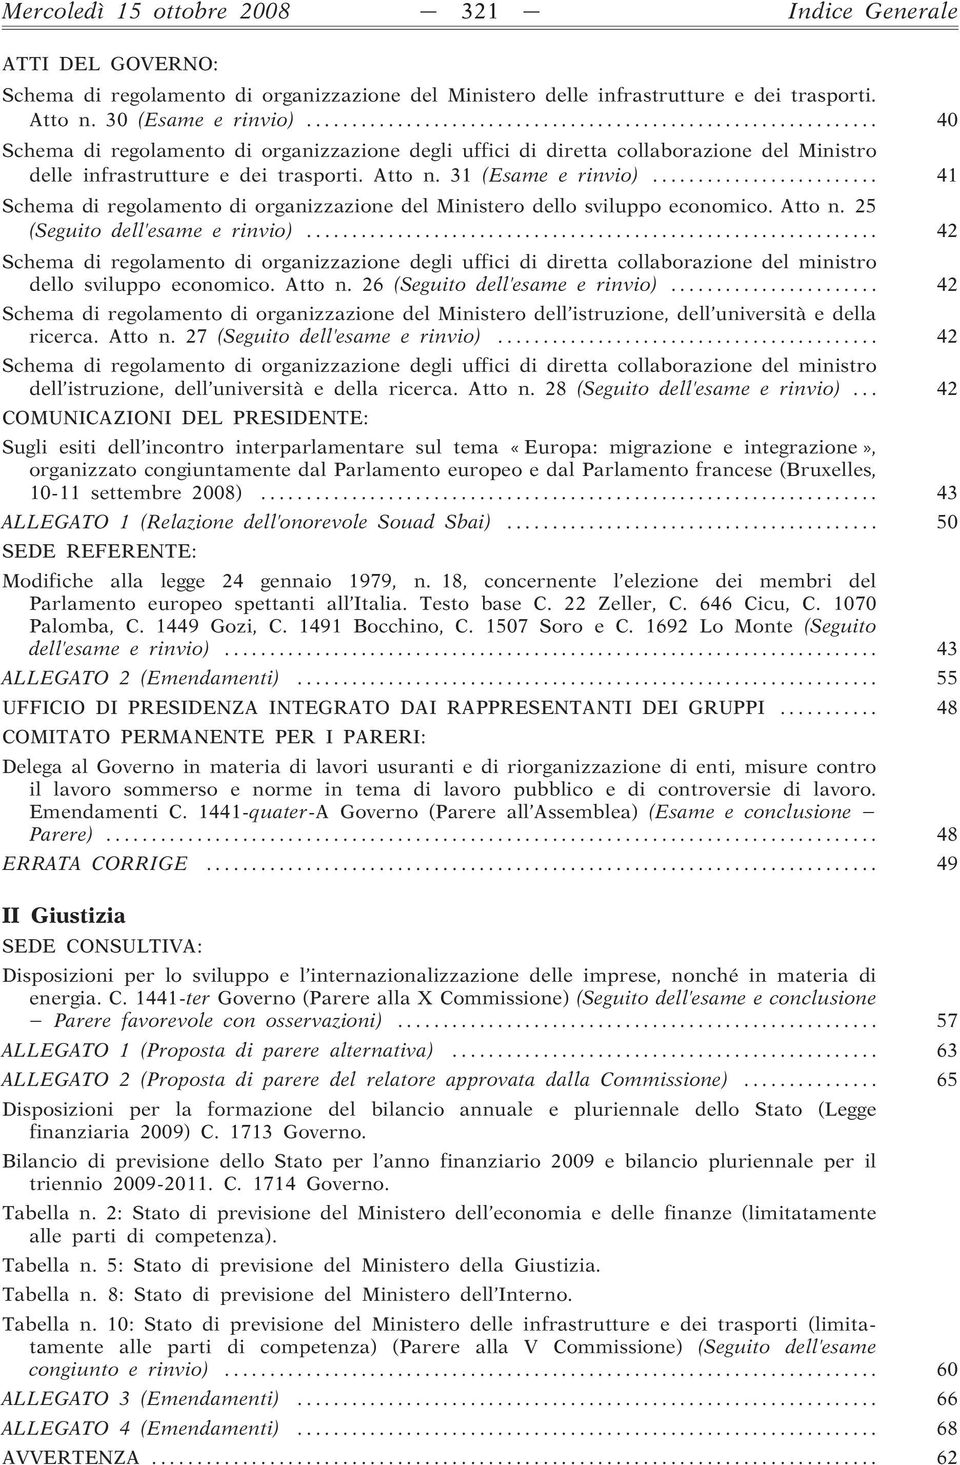 .. 41 Schema di regolamento di organizzazione del Ministero dello sviluppo economico. Atto n. 25 (Seguito dell esame e rinvio).